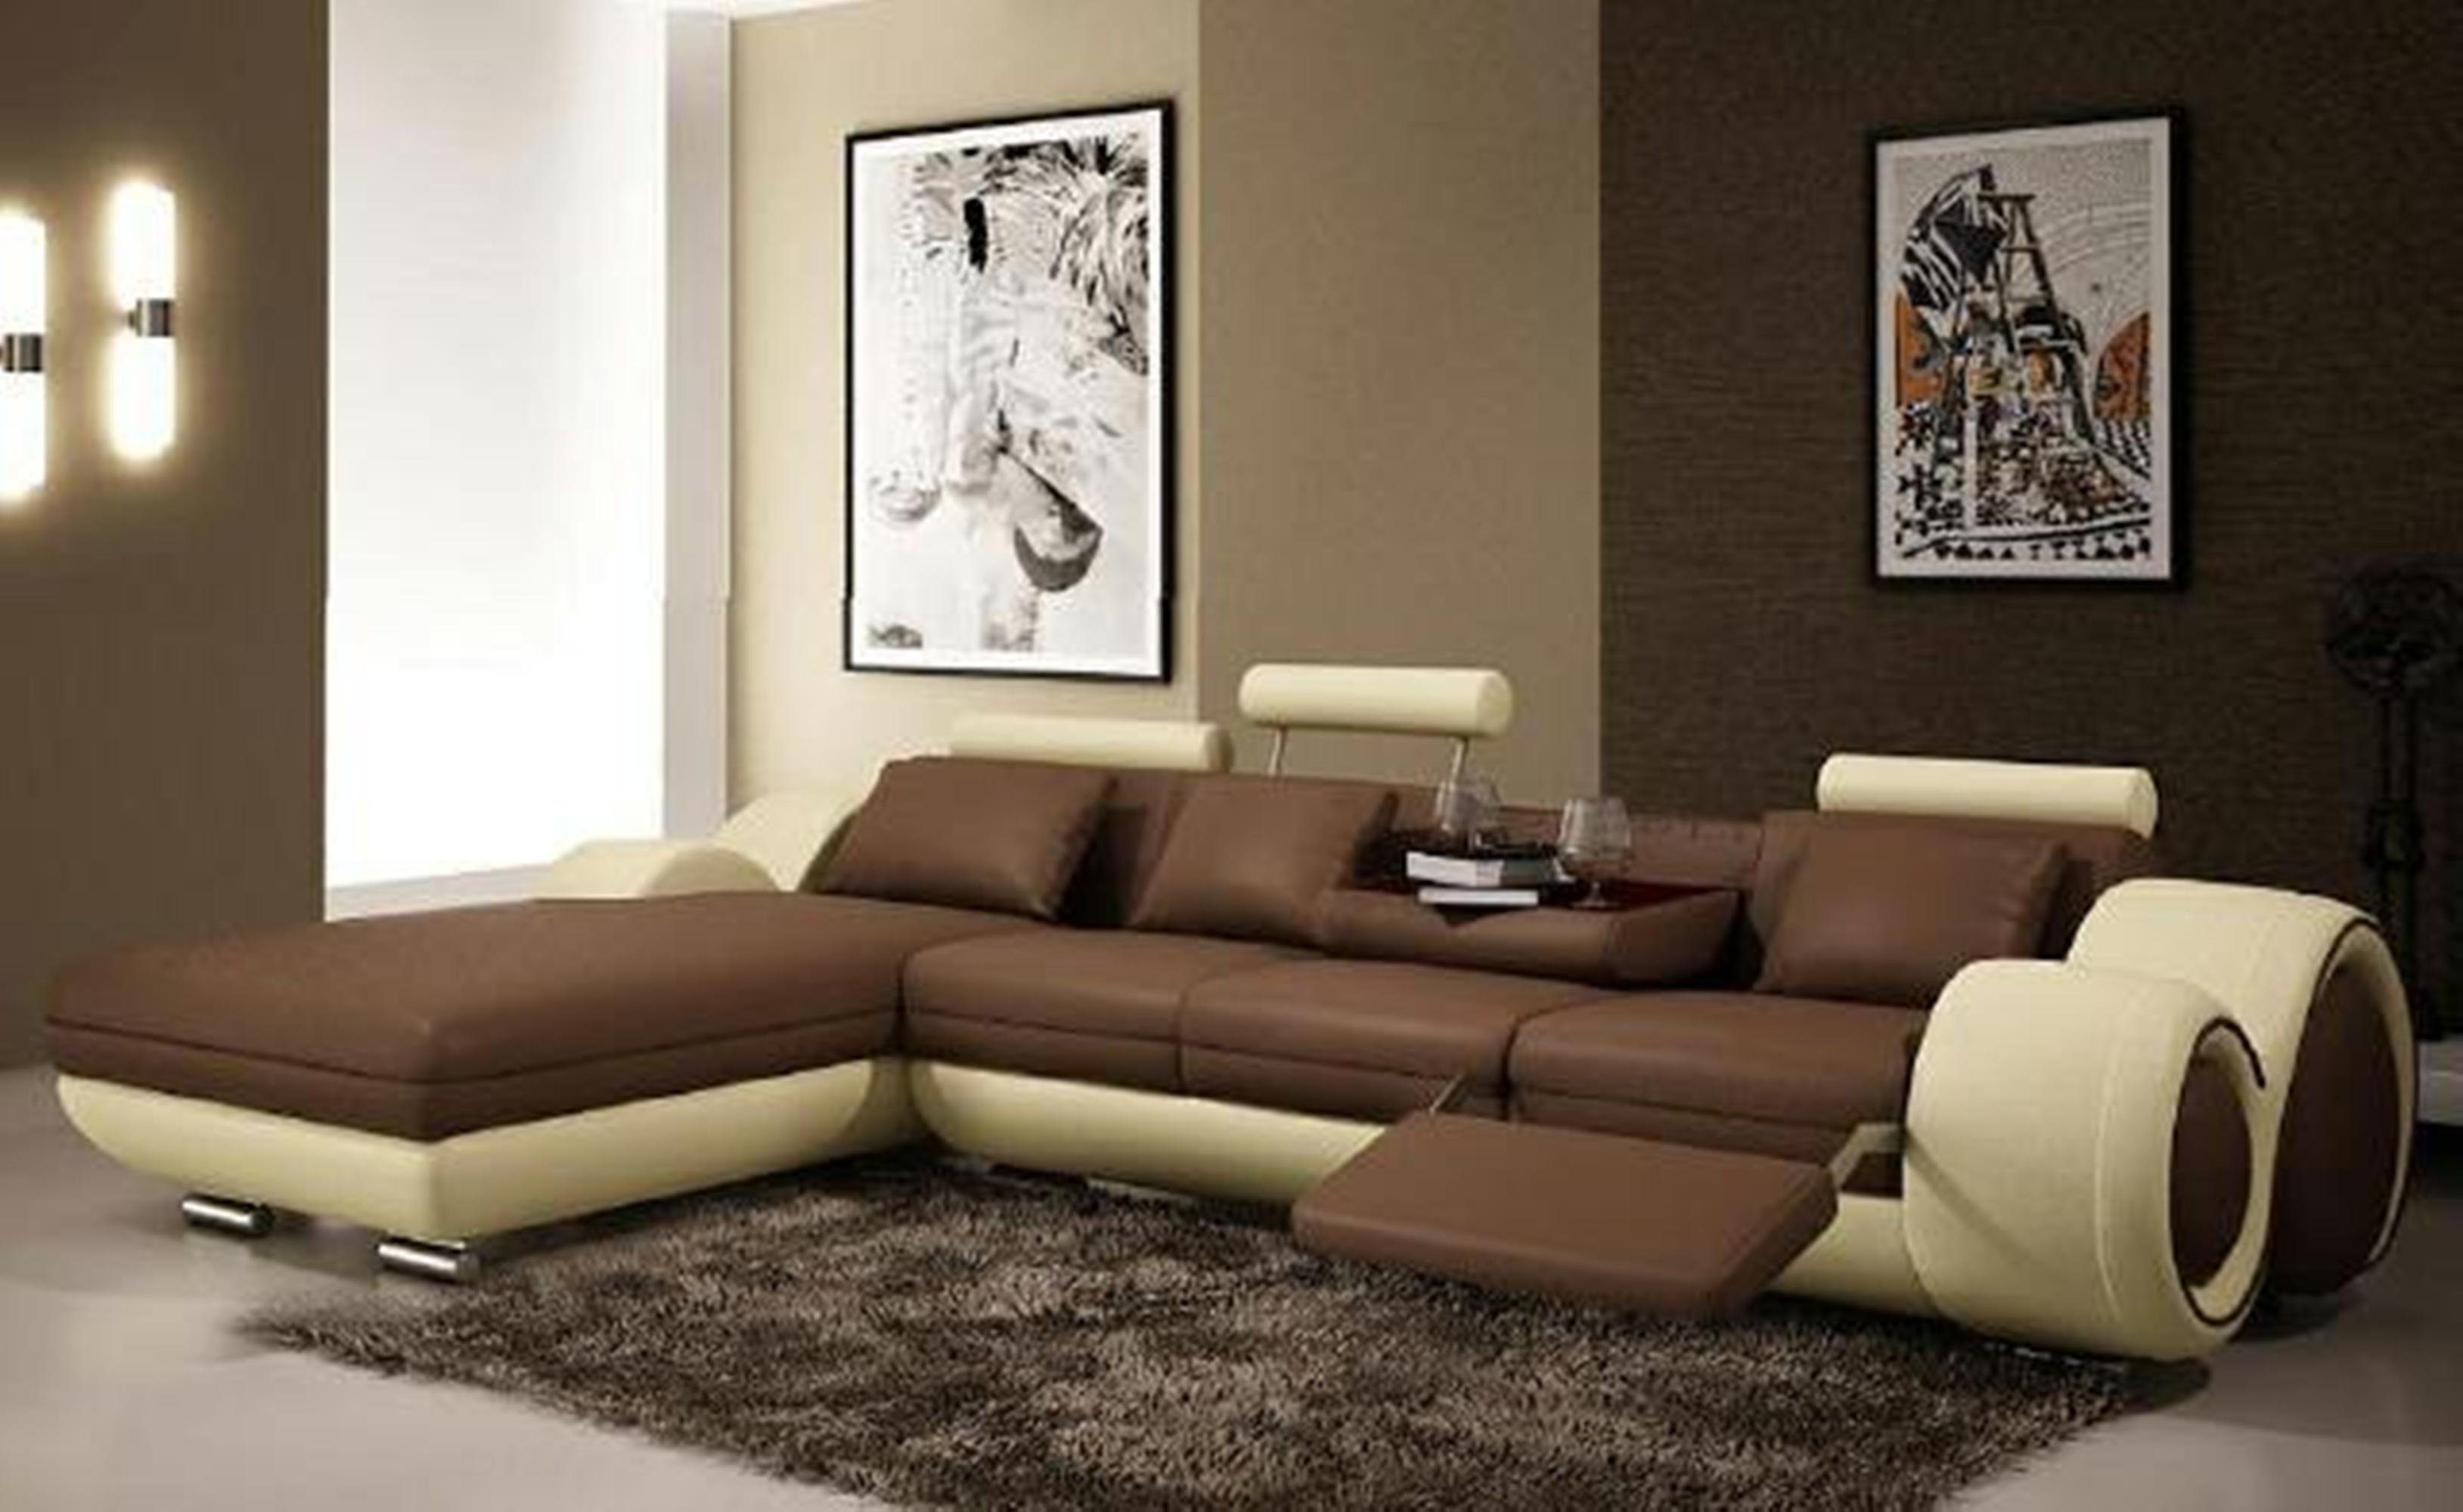 JVmoebel Ecksofa Modernes Ledersofa Ecksofa Wohnzimmer Couch Polster Sofa, Made in Europe braun-beige